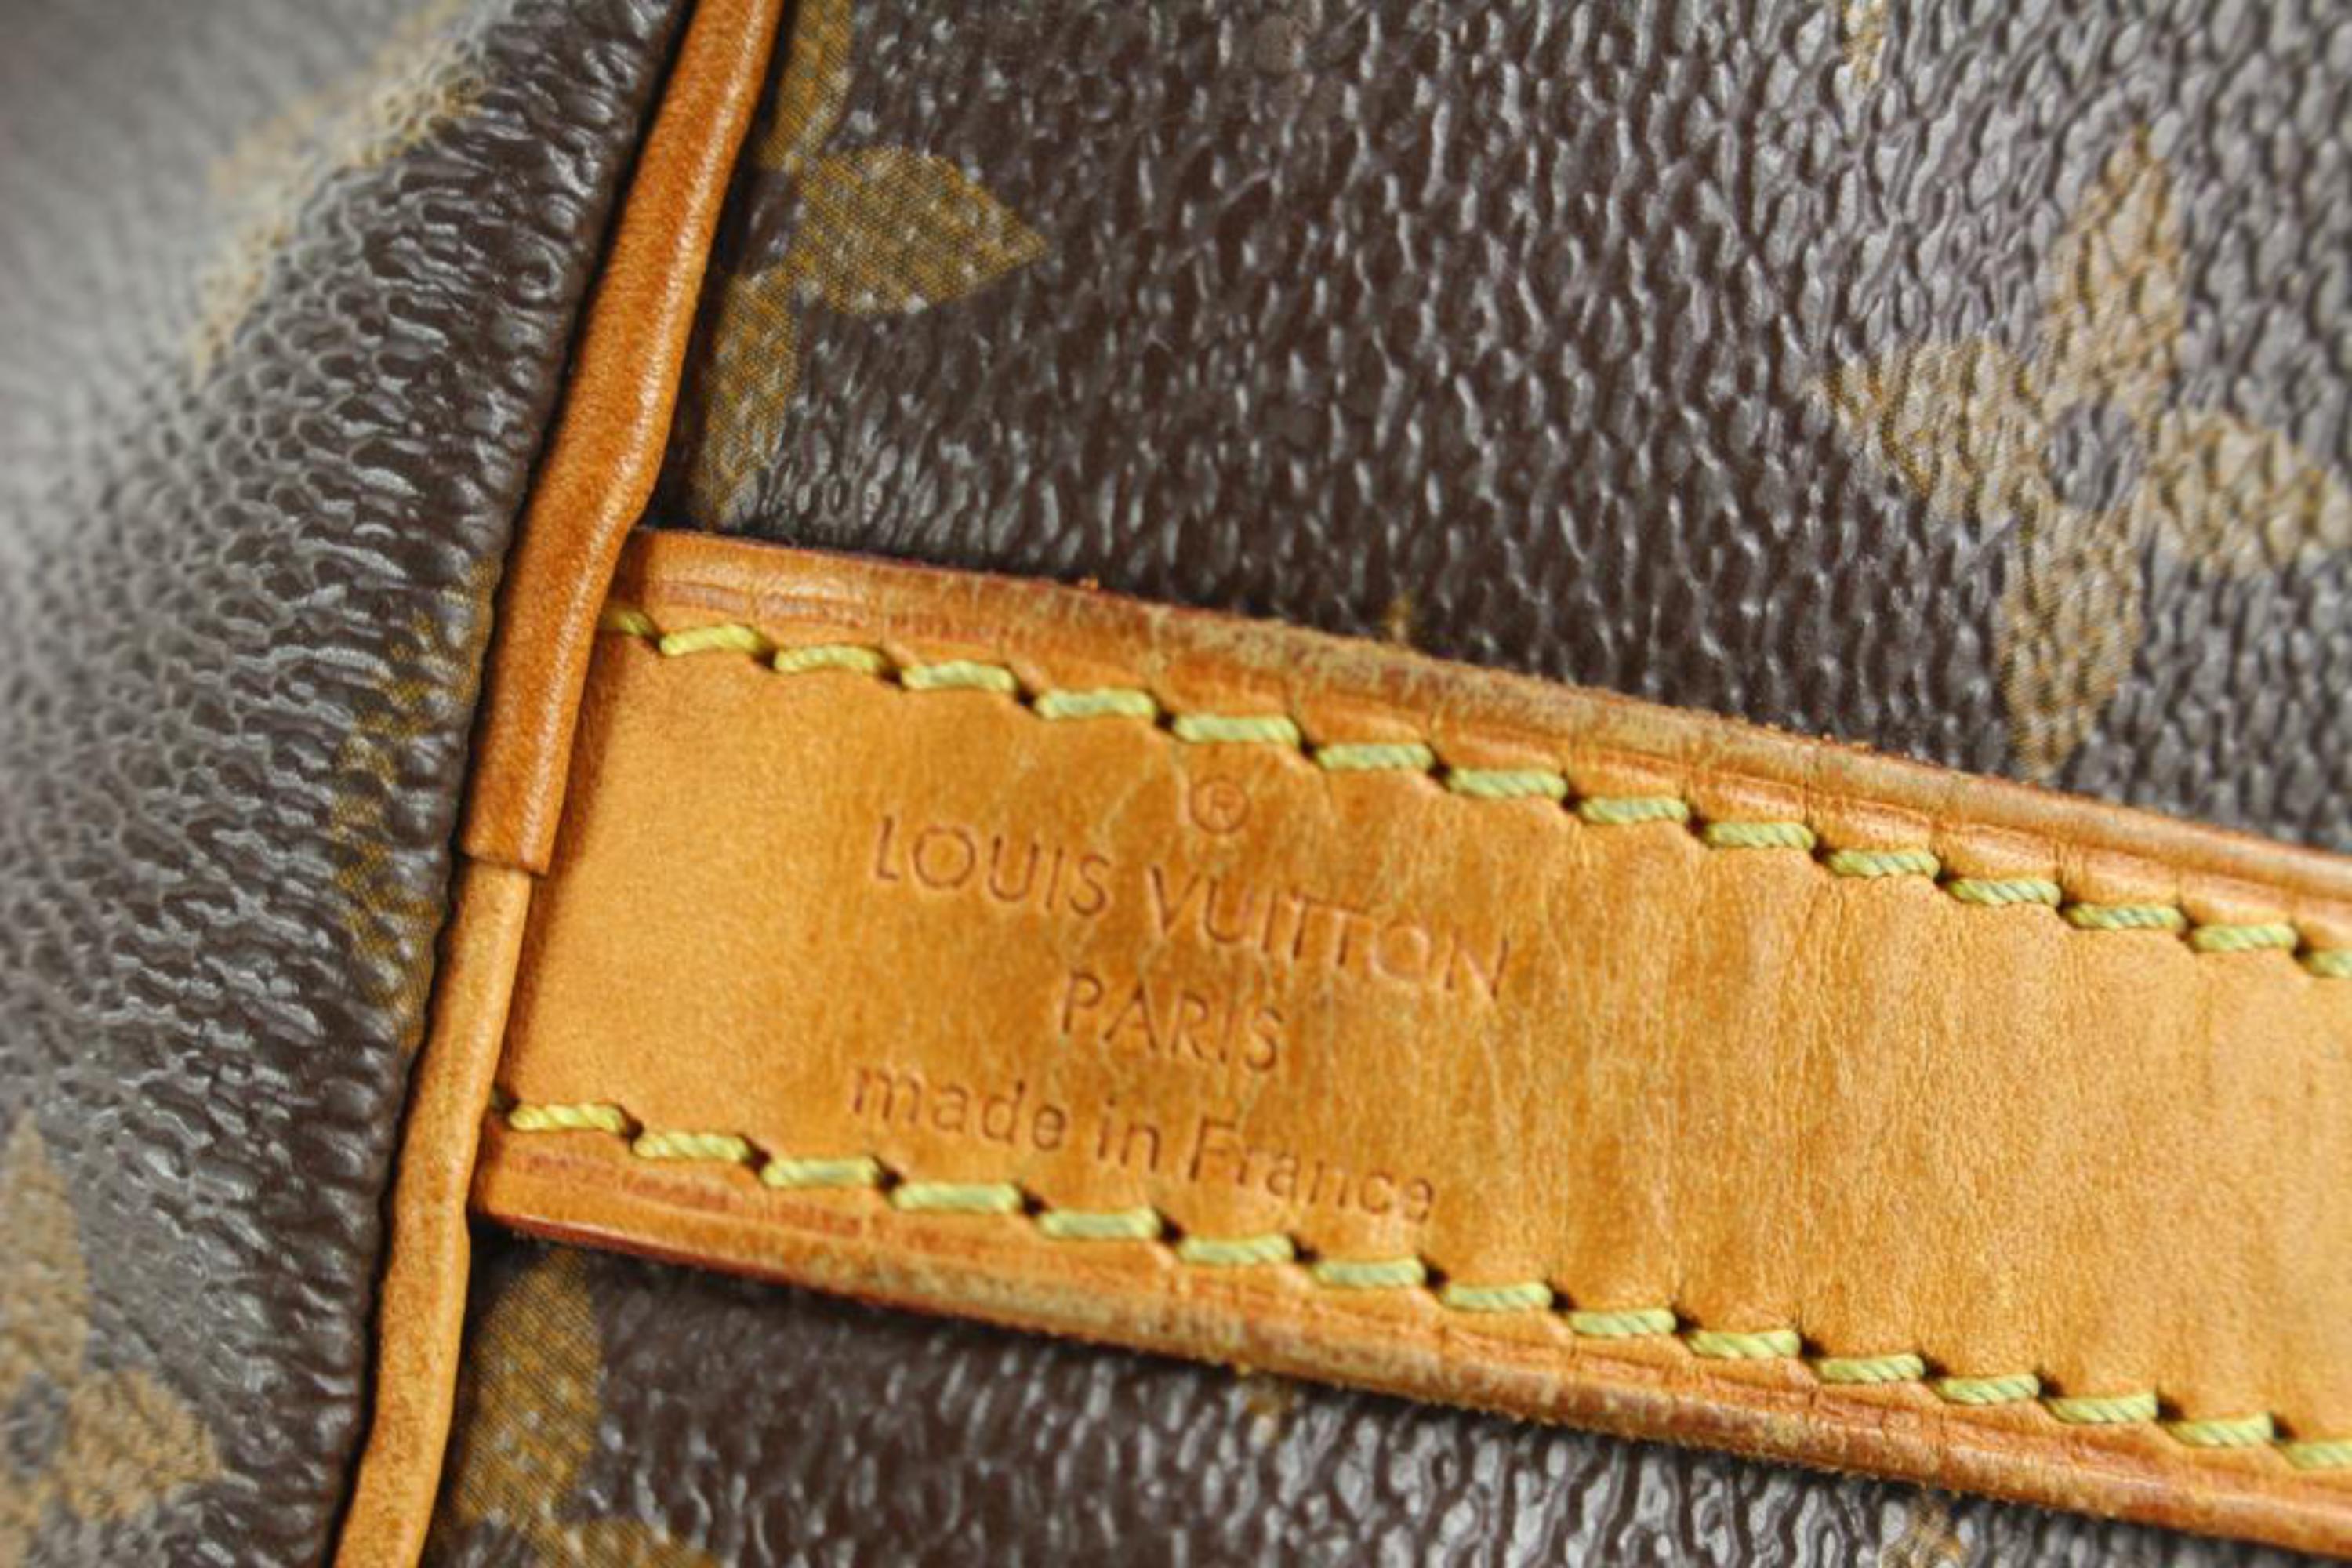 Conjunto Louis Vuitton – Possessive